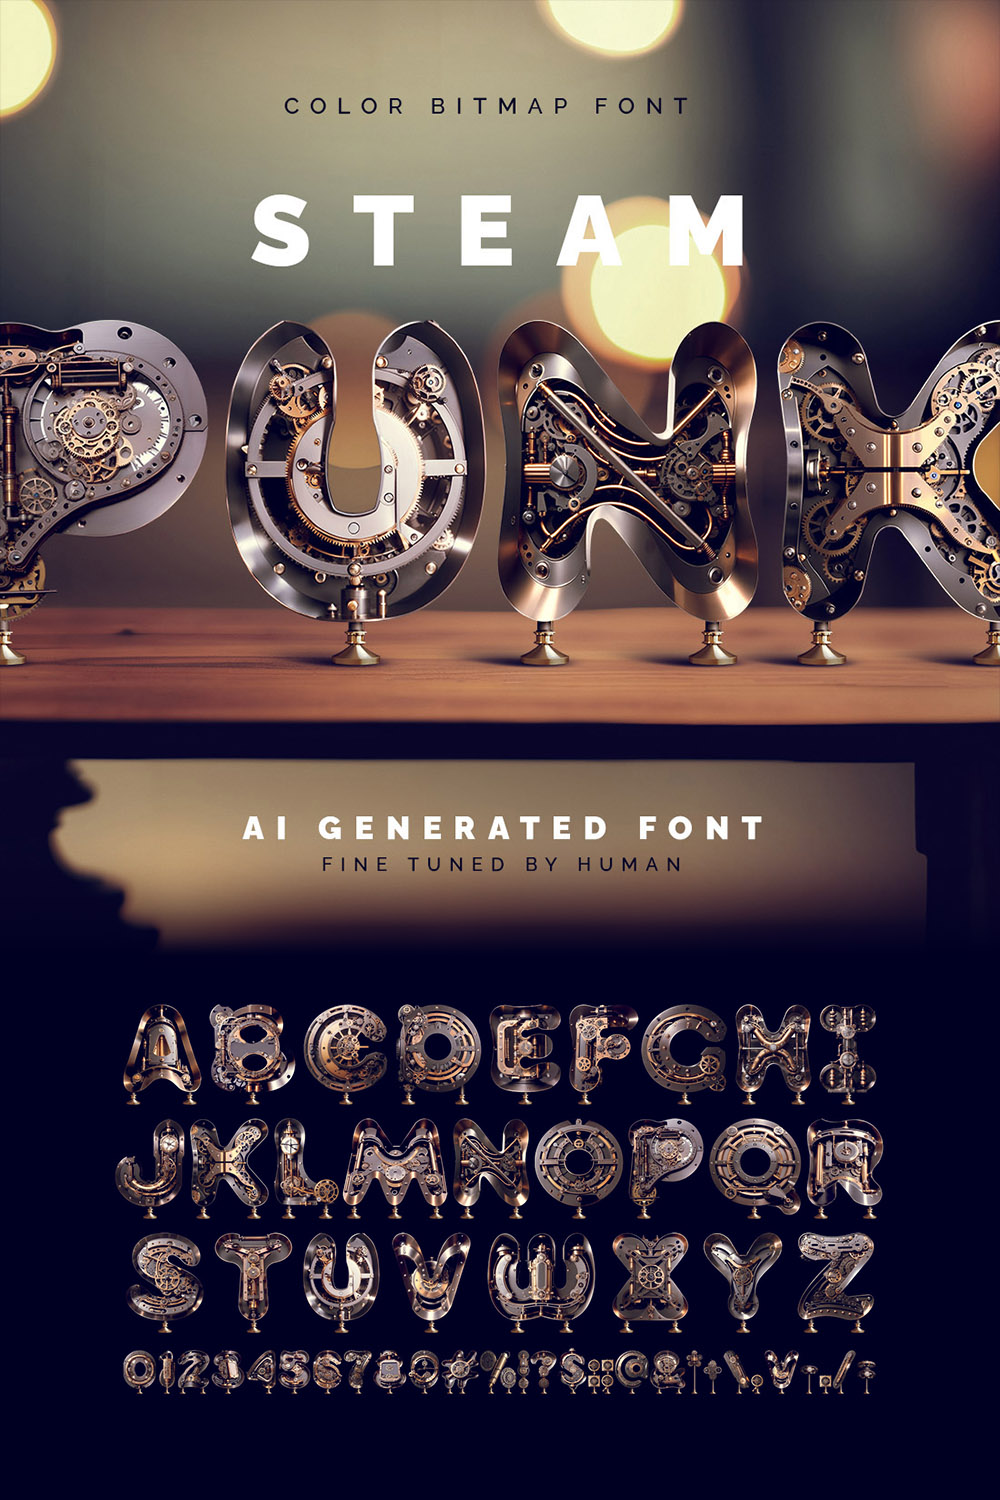 SteampunkAi - Color Bitmap Font pinterest preview image.